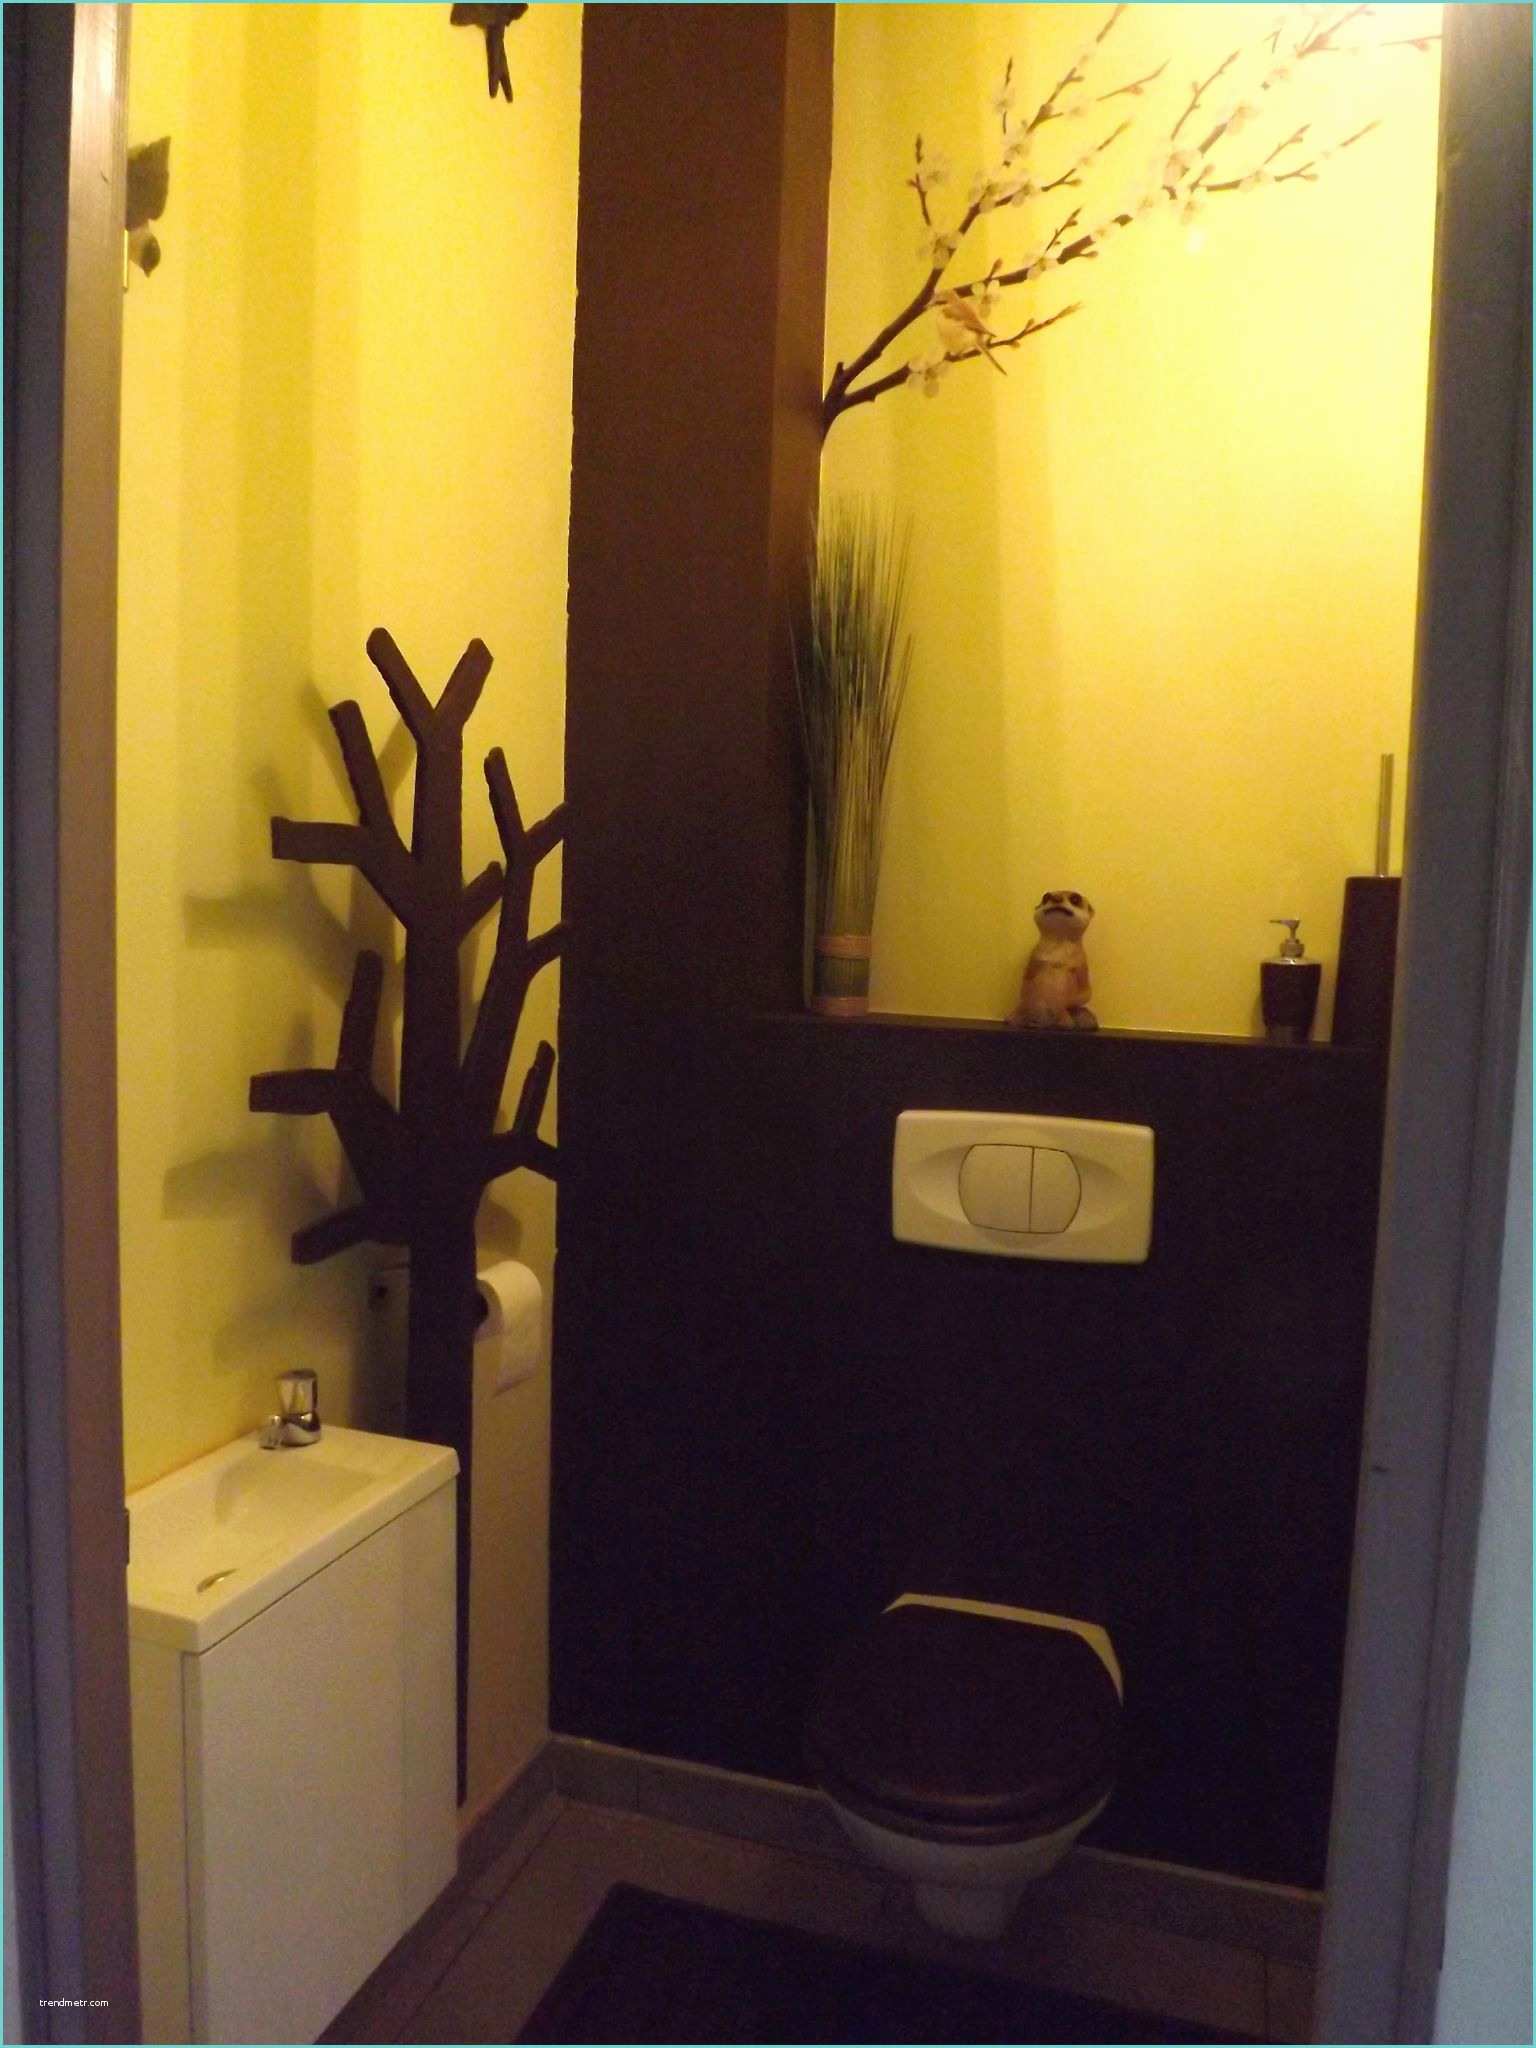 Ide Dco Pour Petit Wc Deco toilette Noir Stunning Dco toilette Ide Et Tendance